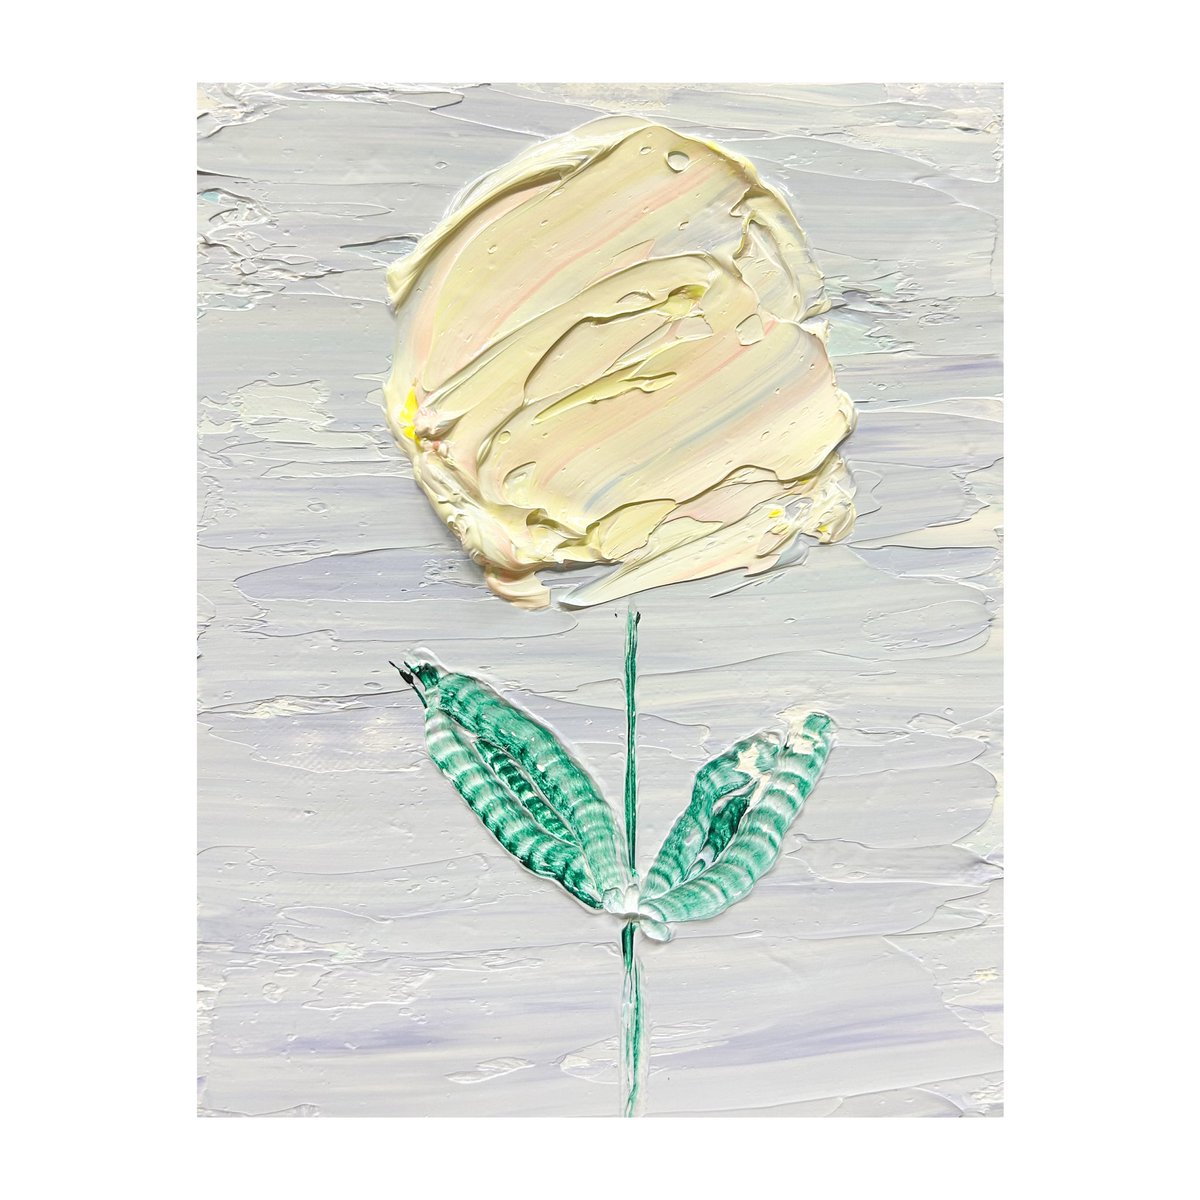 一筋の光

#キャンバス #canvas #油絵 #oilpainting #花 #花屋 #微睡む #癒し #Flowers #Flowershop #doze #Healing #ときめき #tokimeki #抽象画 #Abstractpainting #ドローイング #drawing